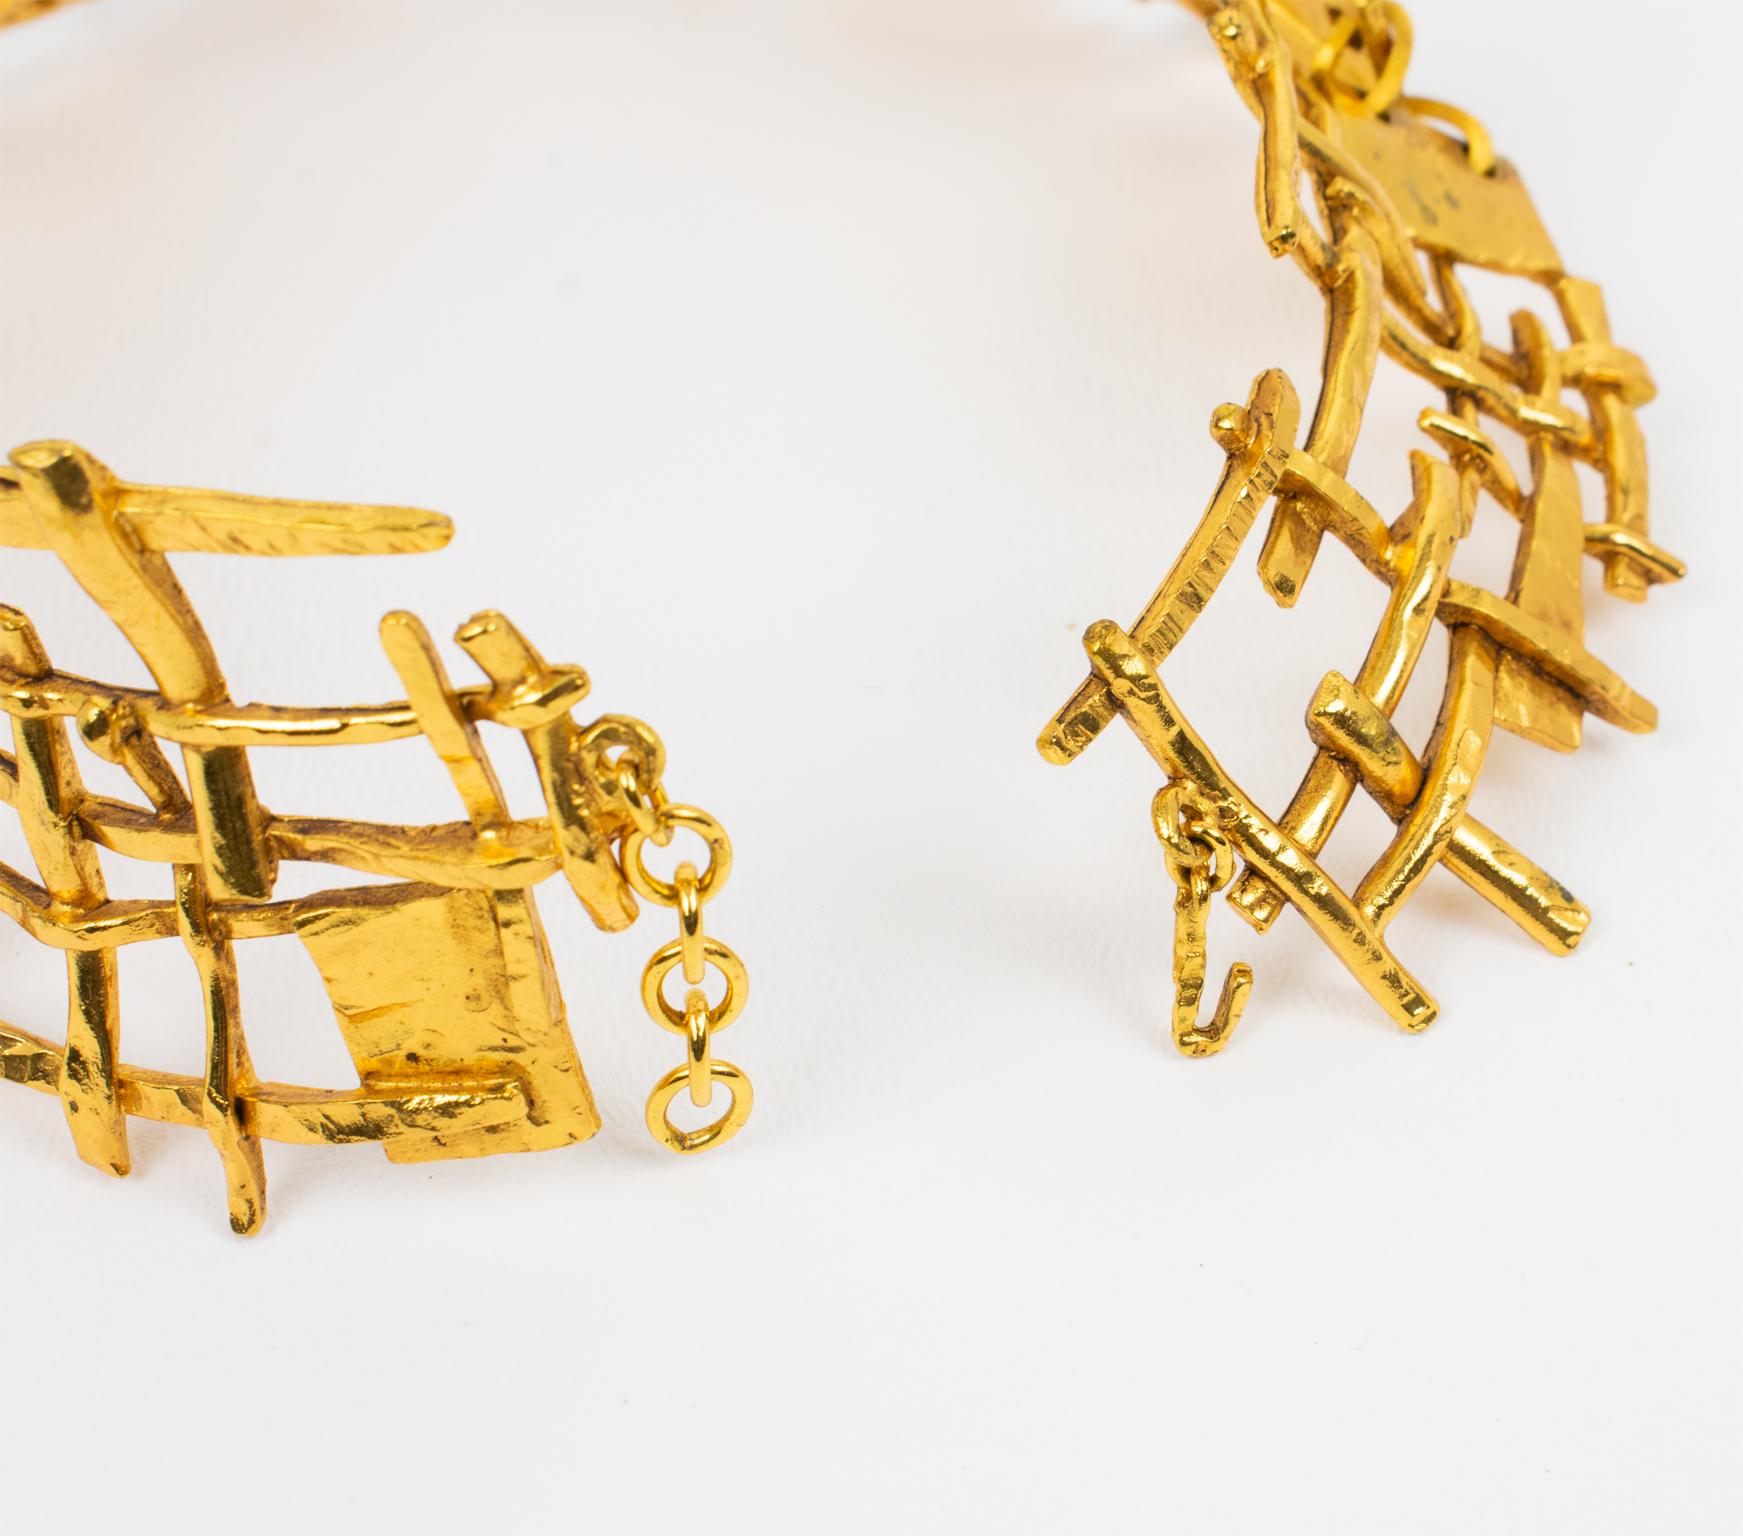 French Designer Studio Massive Brutalist Gilt Metal Necklace For Sale 5